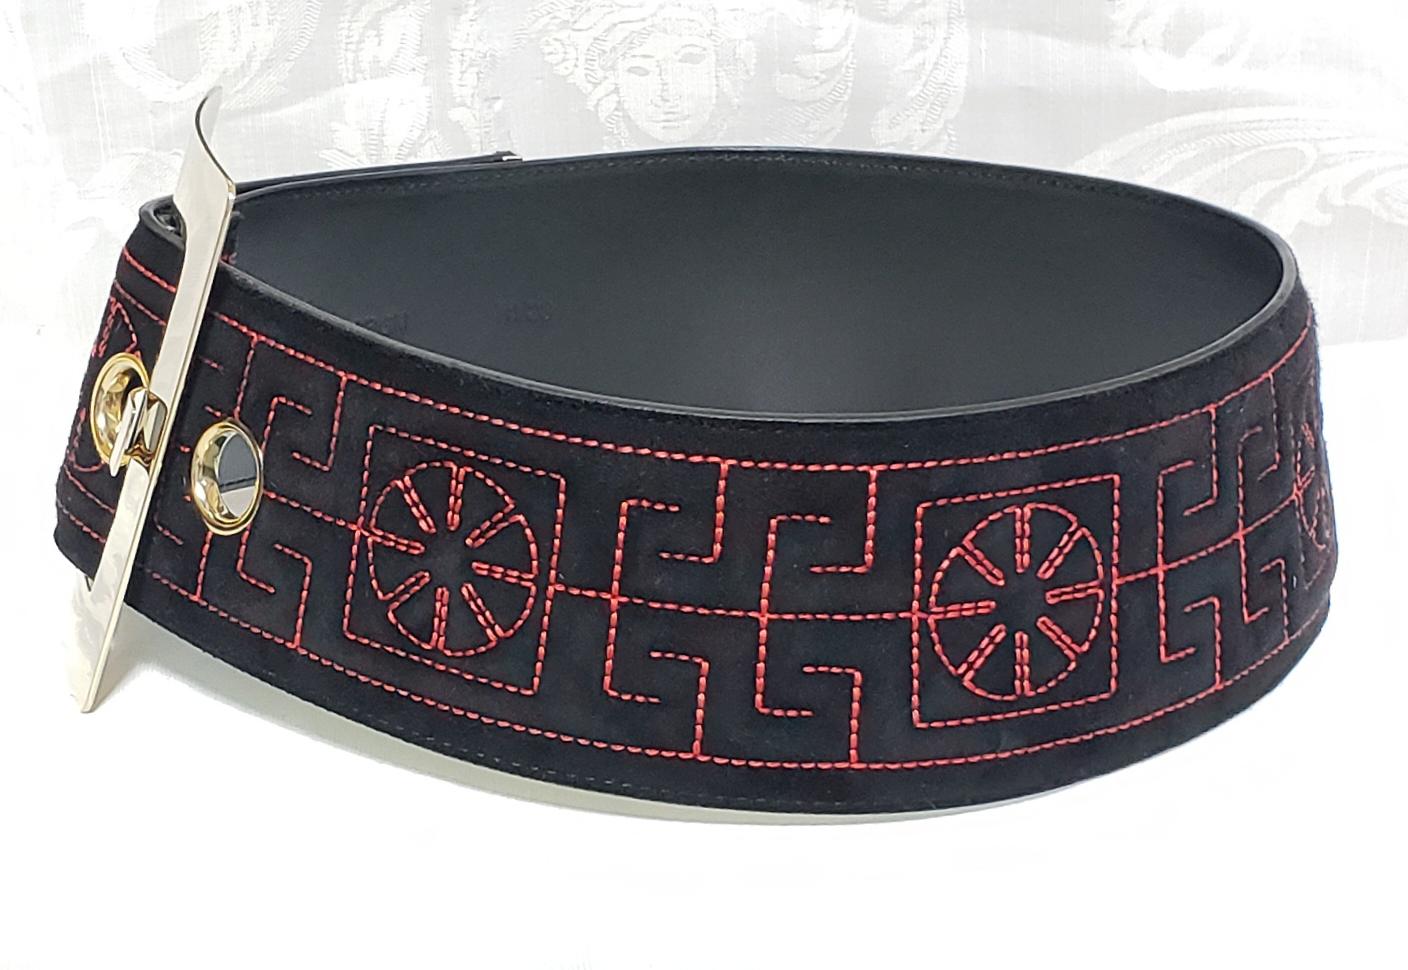 versace red belt